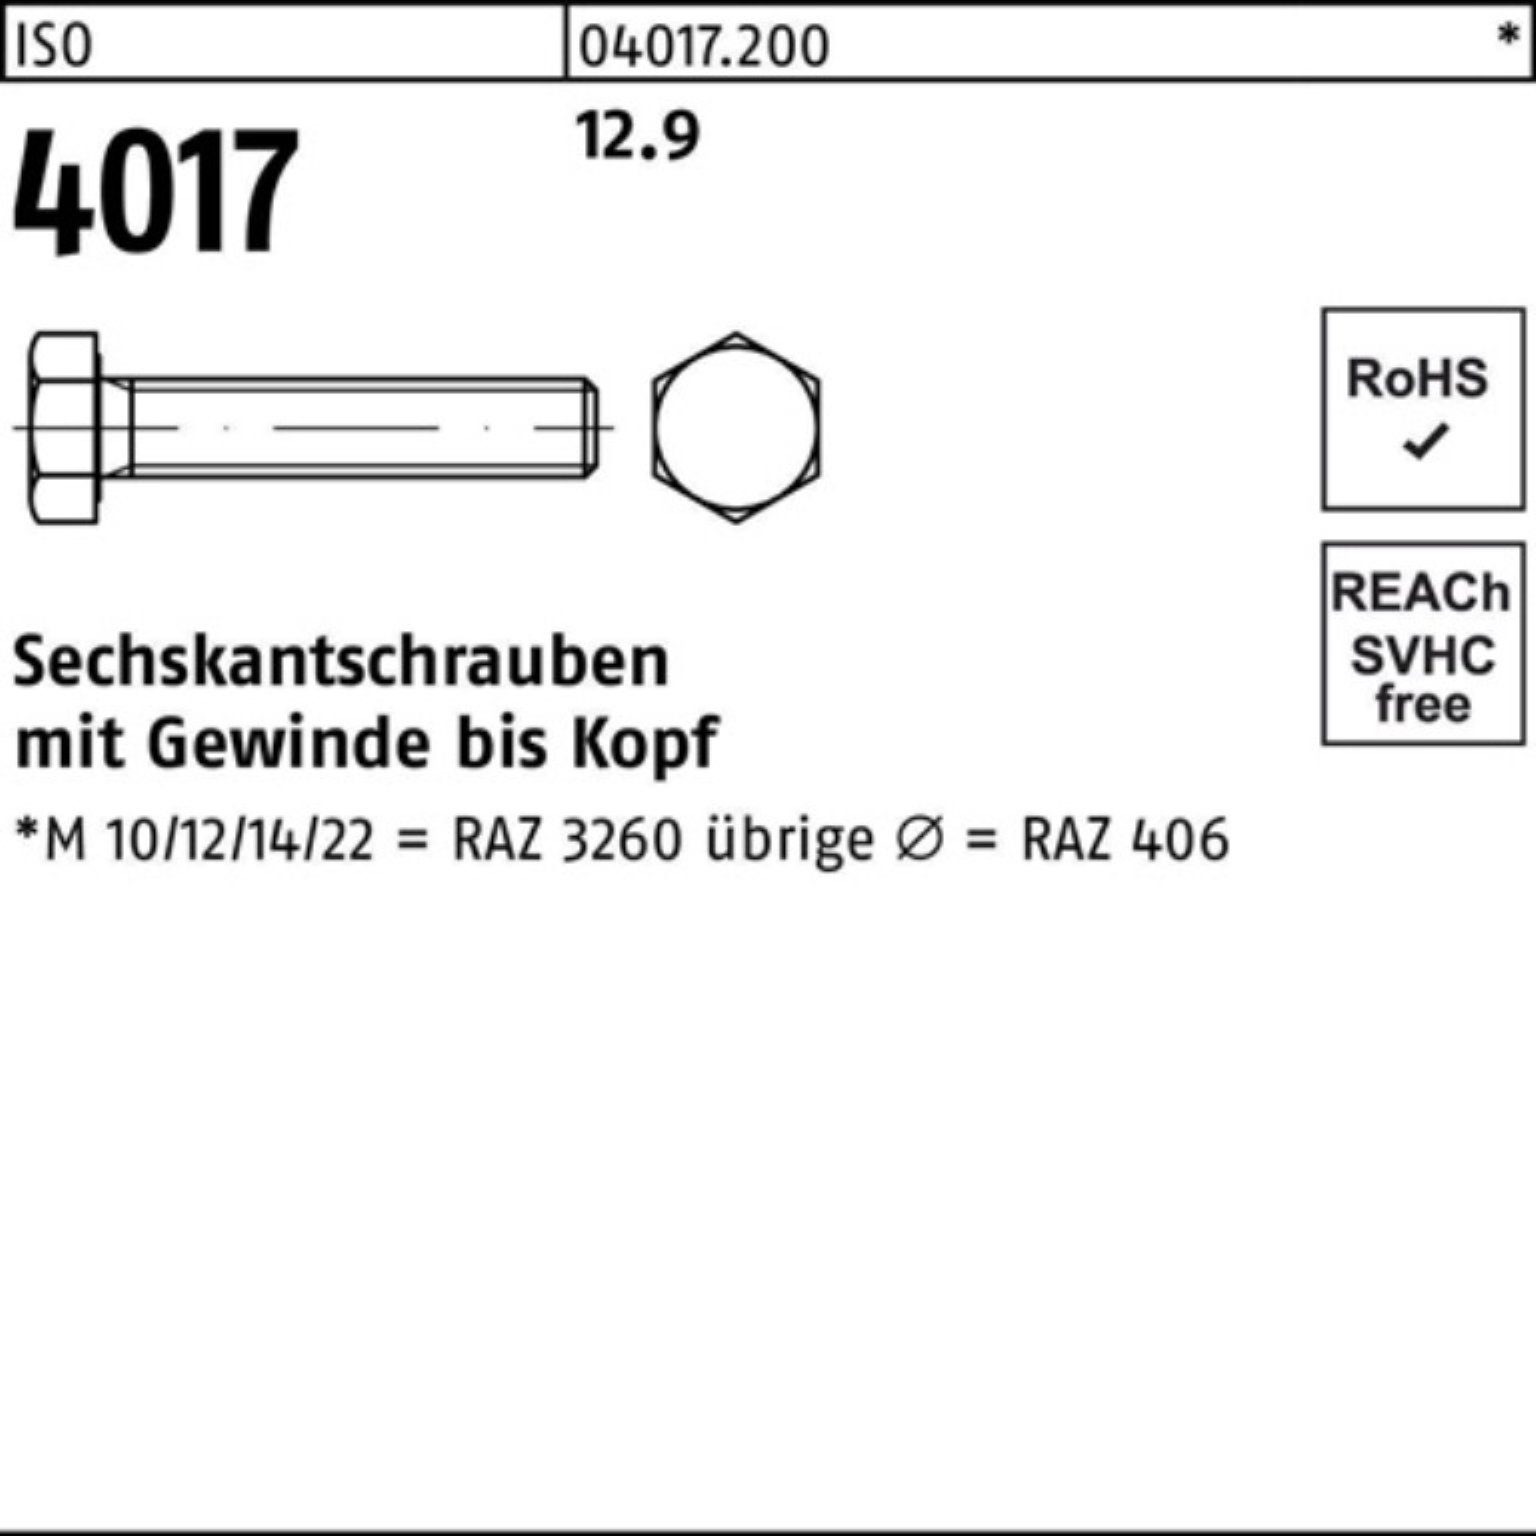 Sechskantschraube 40 12 4017 ISO 500er 500 Bufab VG ISO M6x Stück Pack Sechskantschraube 12.9